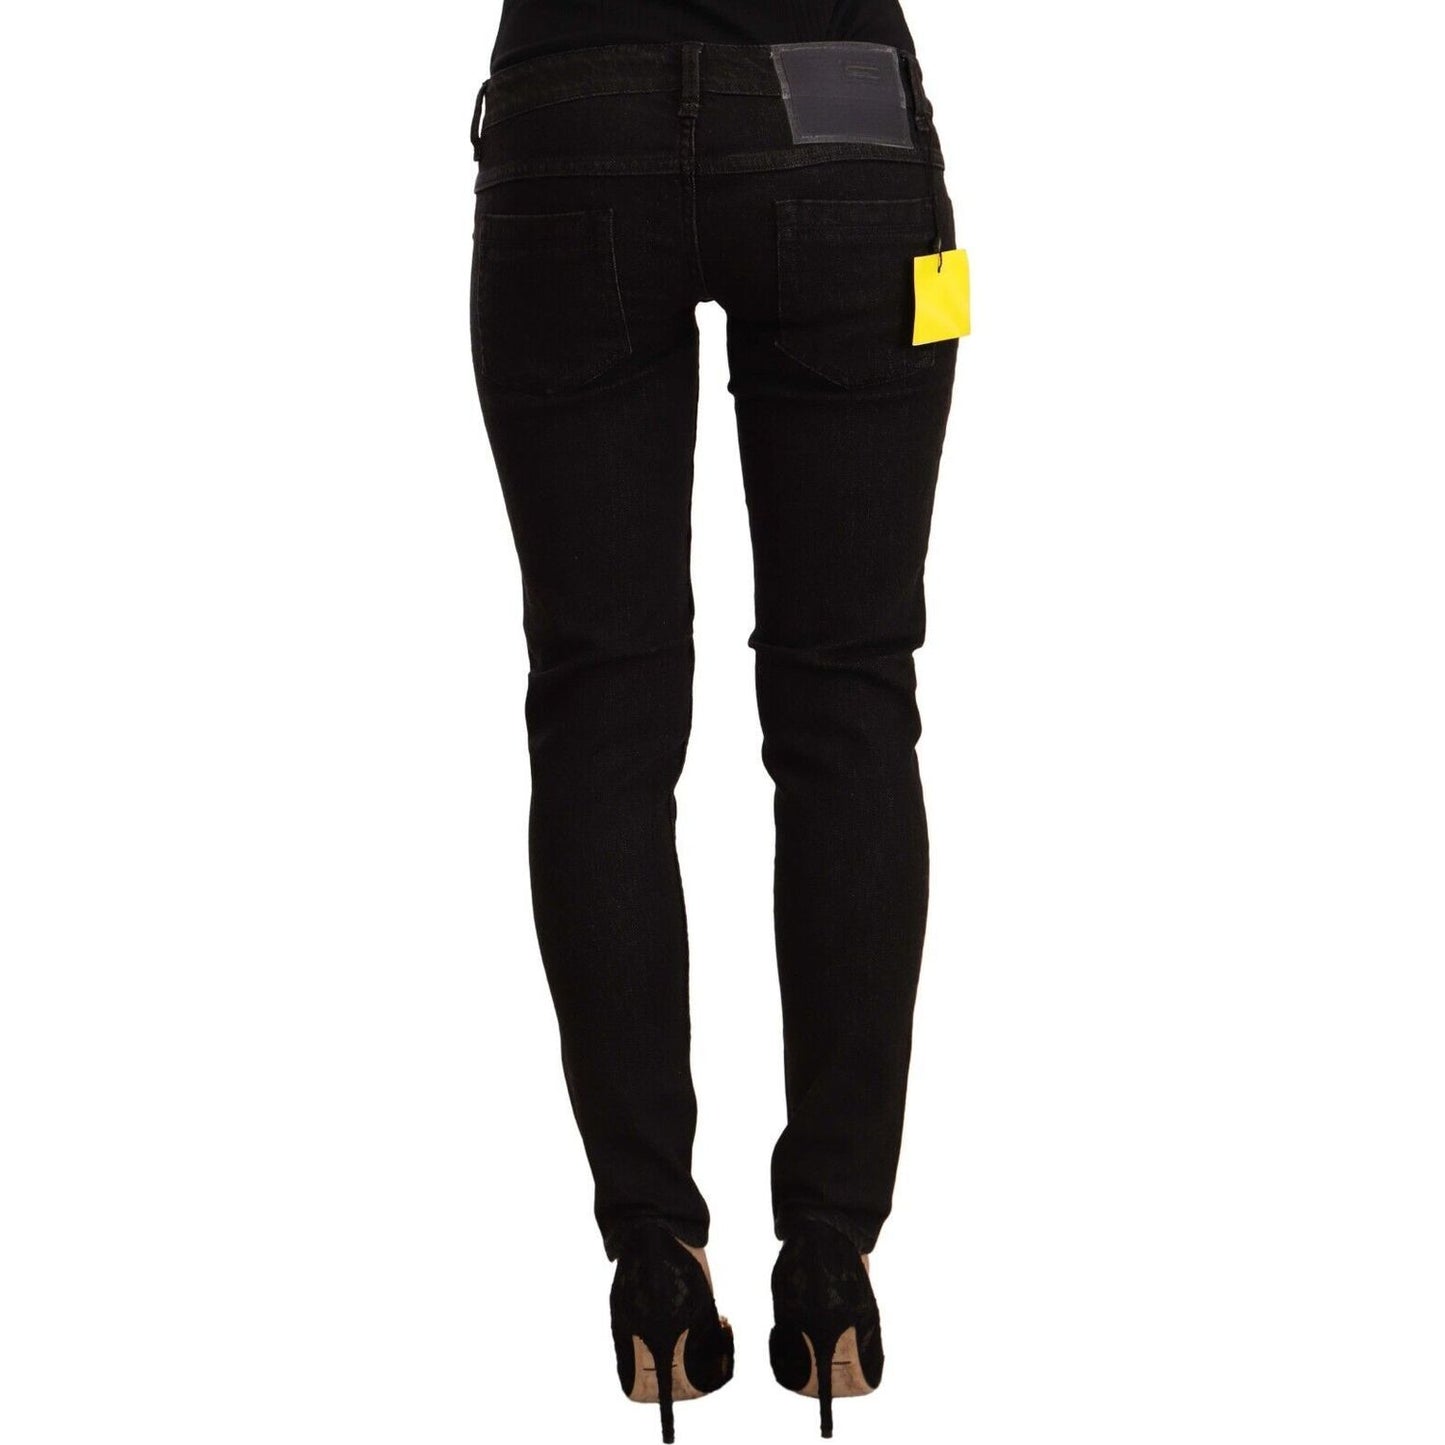 Acht Sleek Skinny Low Waist Black Jeans black-cotton-low-waist-skinny-denim-jeans